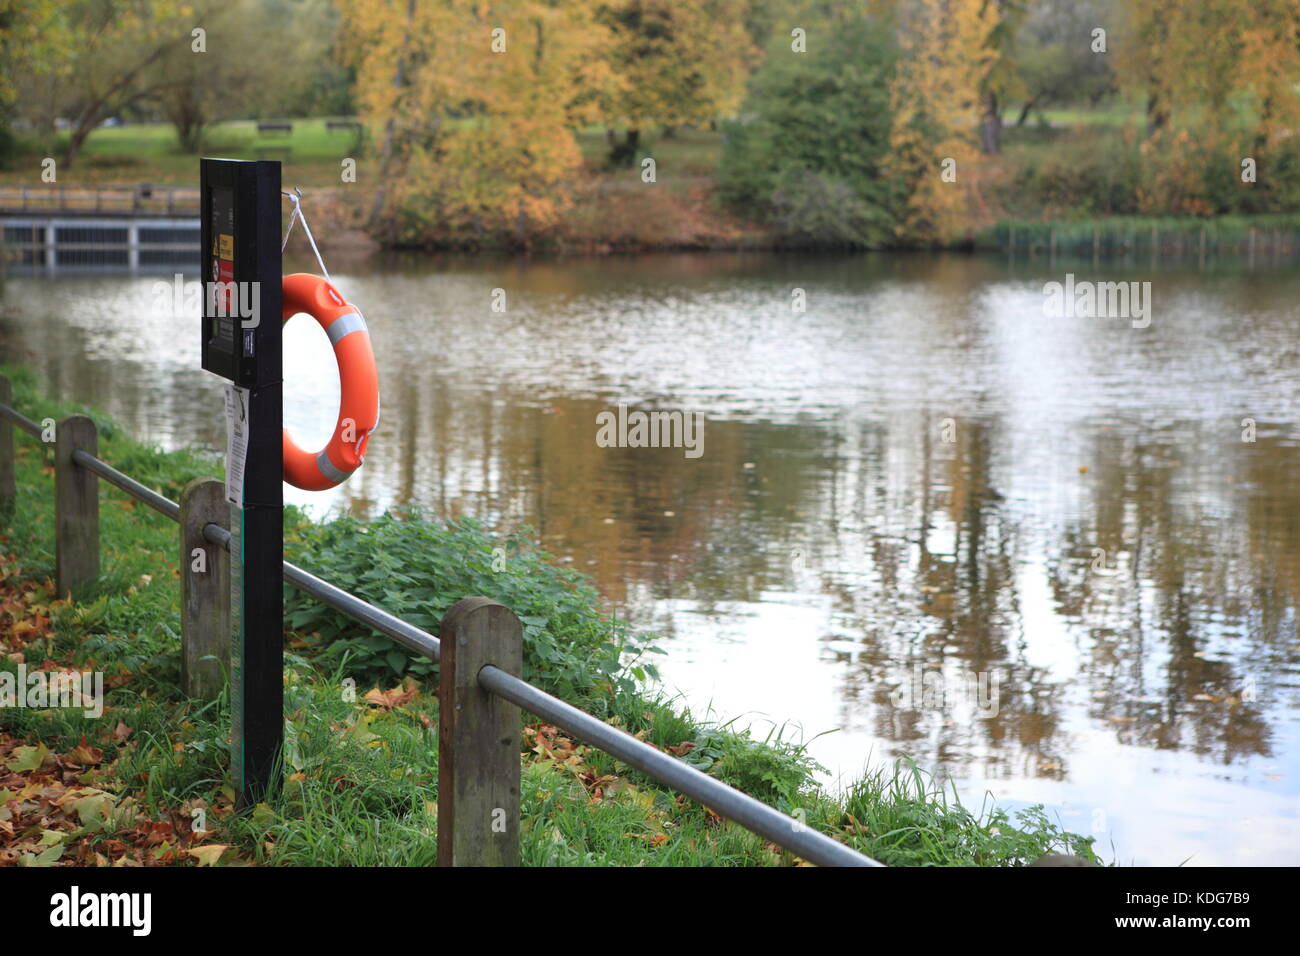 Nicht Schwimmteich in Hampstead Heath. Schild mit Lebensretter. Herbst Tag in London. Stockfoto